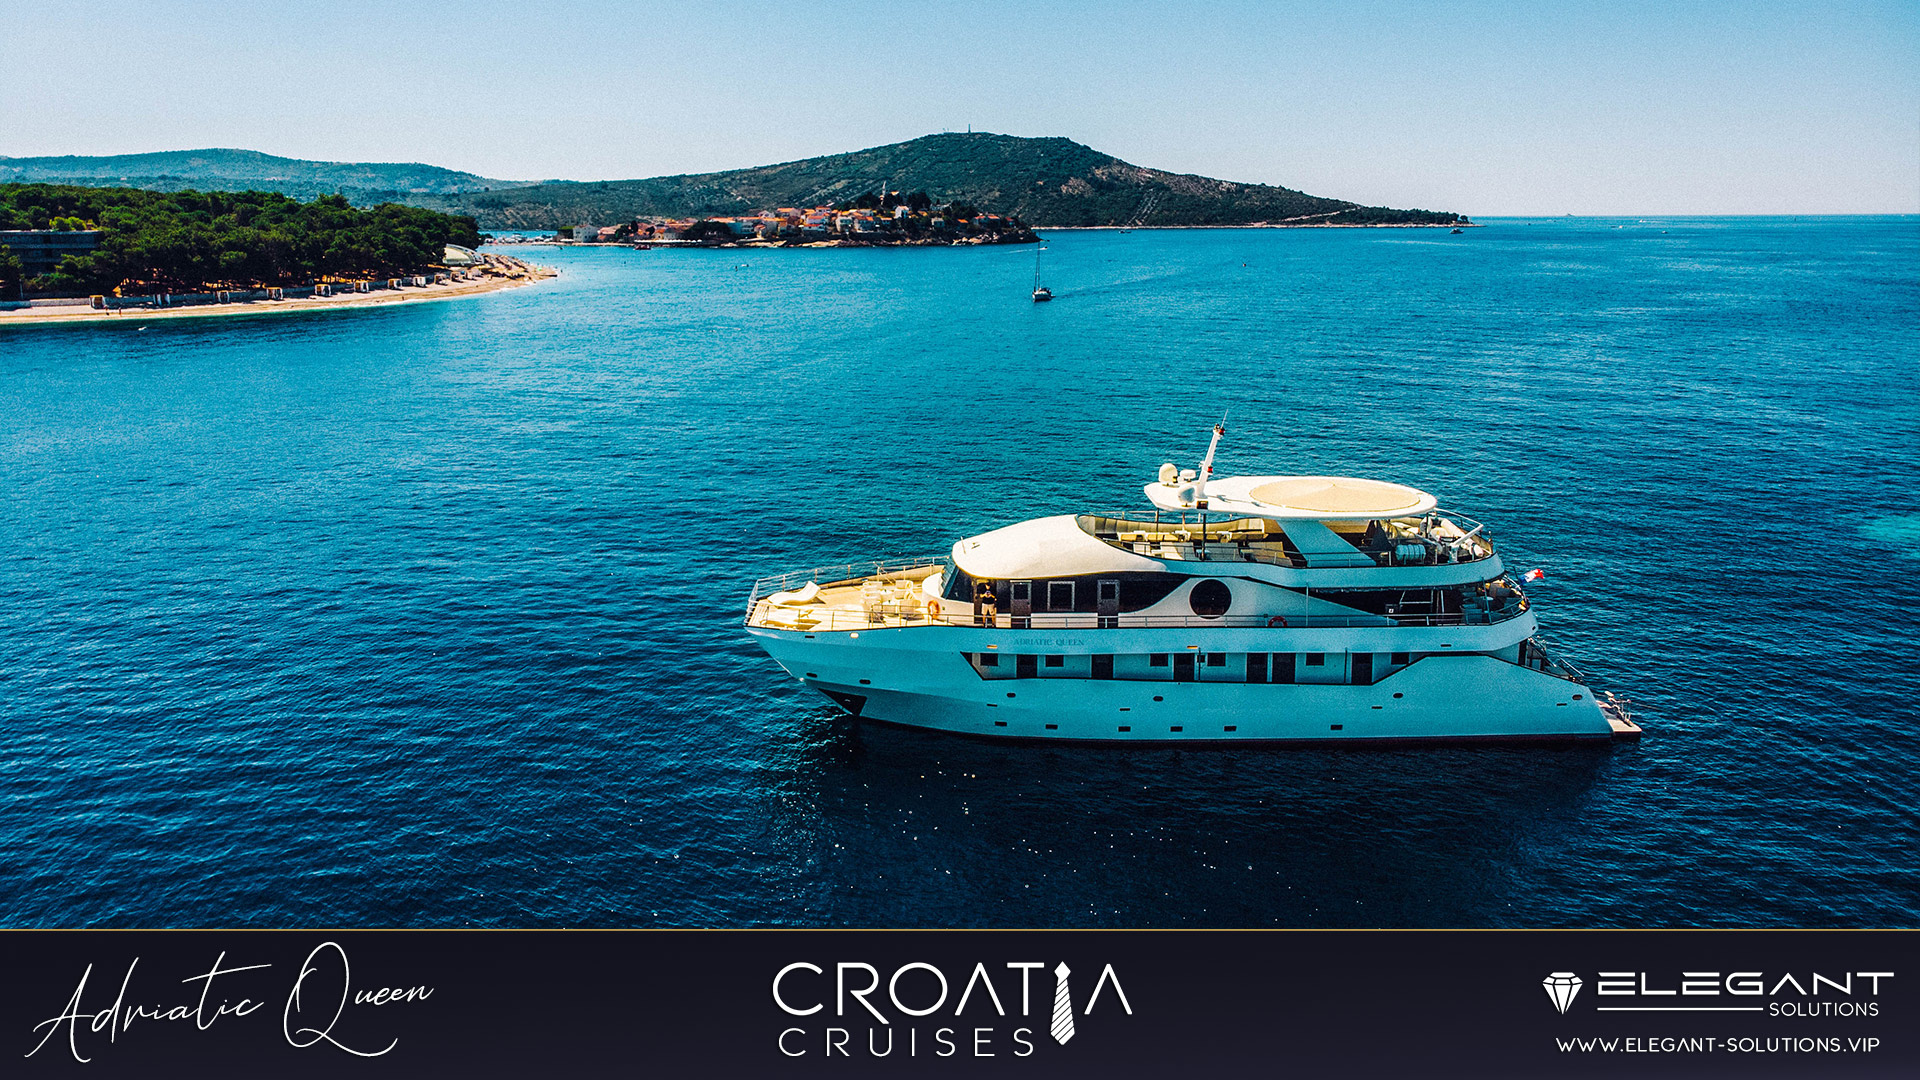 Adriatic QUEEN Cruises Croatia